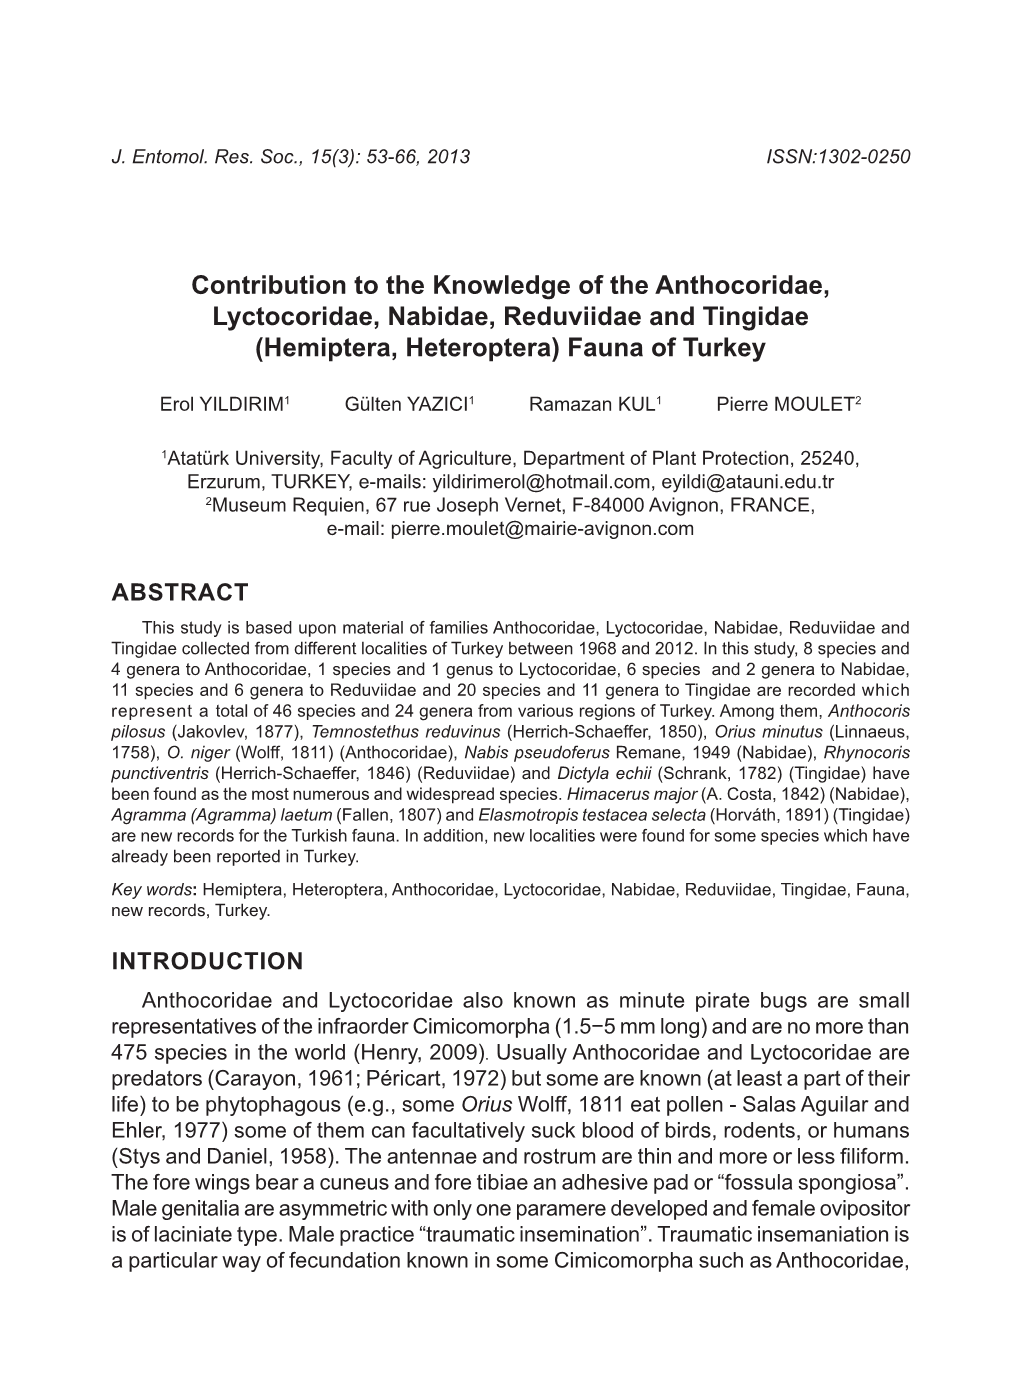 Contribution to the Knowledge of the Anthocoridae, Lyctocoridae, Nabidae, Reduviidae and Tingidae (Hemiptera, Heteroptera) Fauna of Turkey